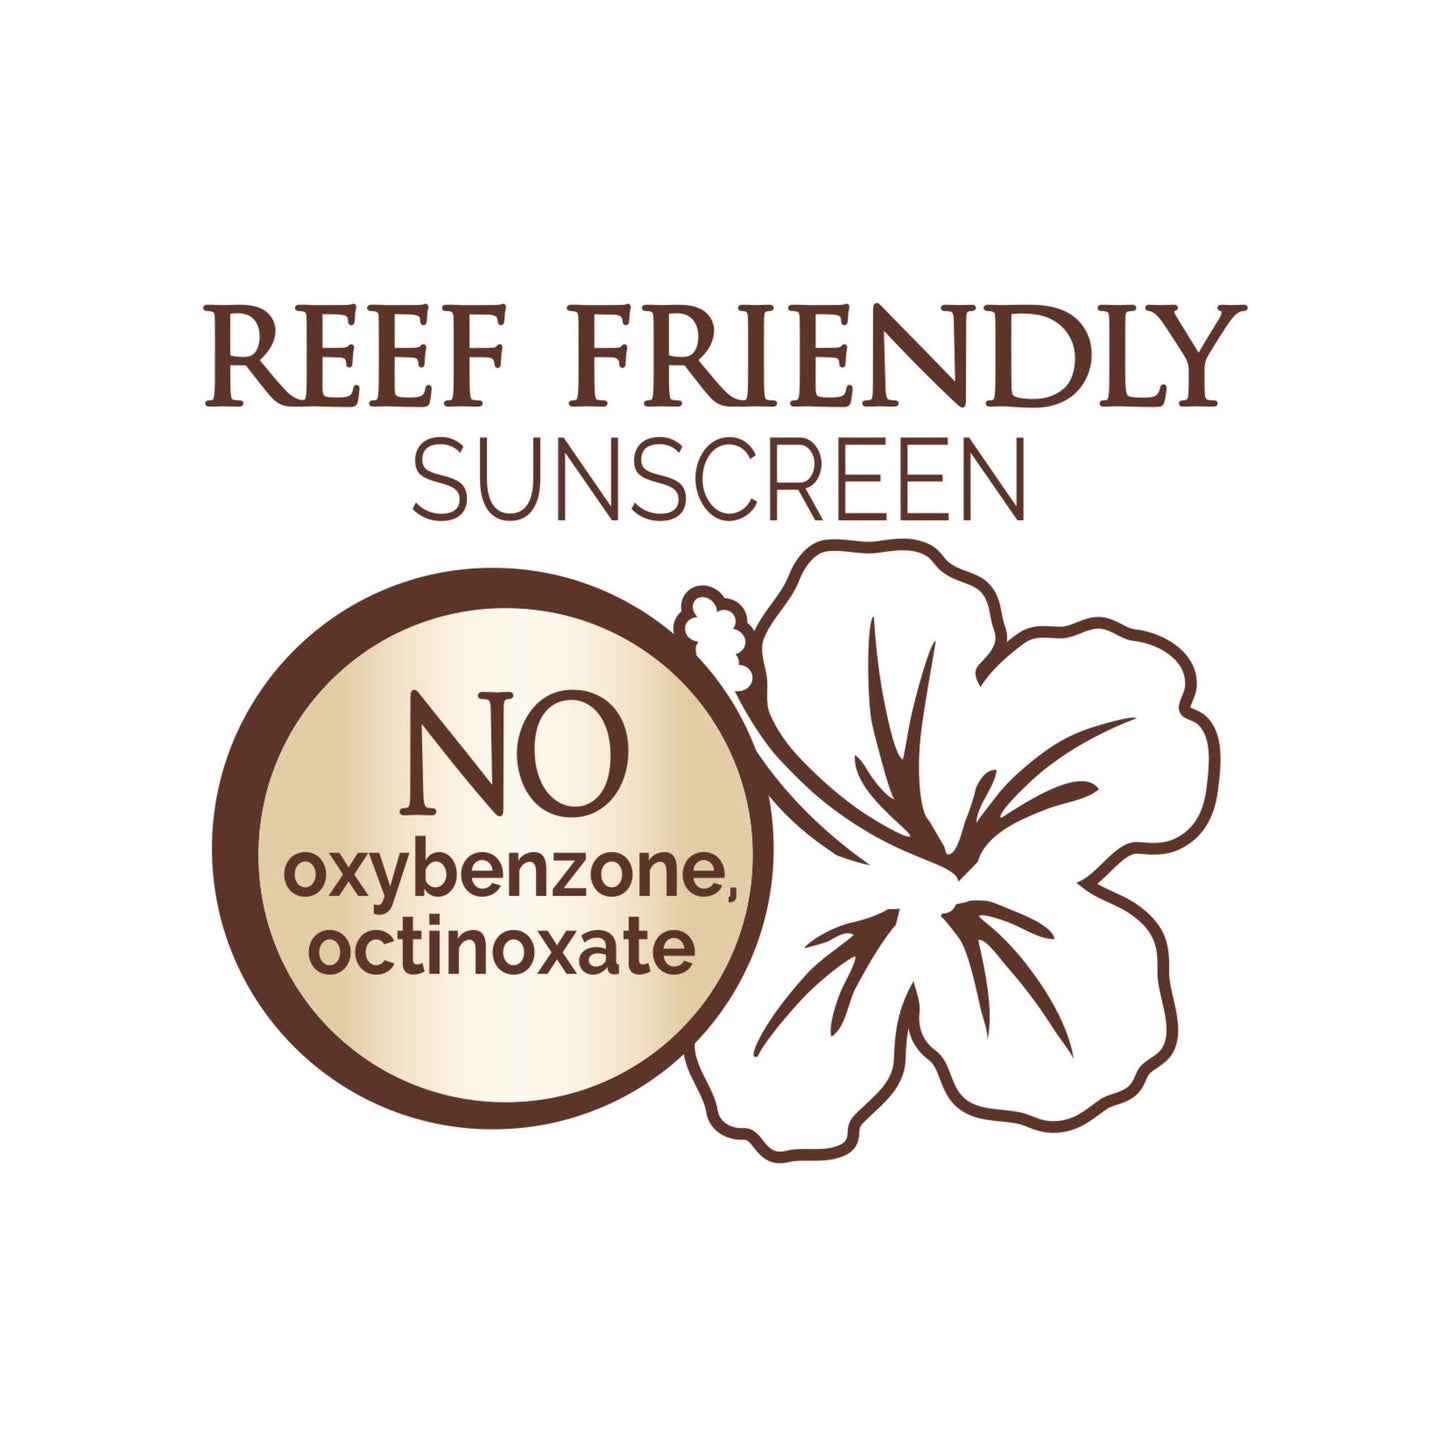 Hawaiian Tropic Mineral Sun Milk Face Sunscreen Lotion, SPF 30, 1.7oz